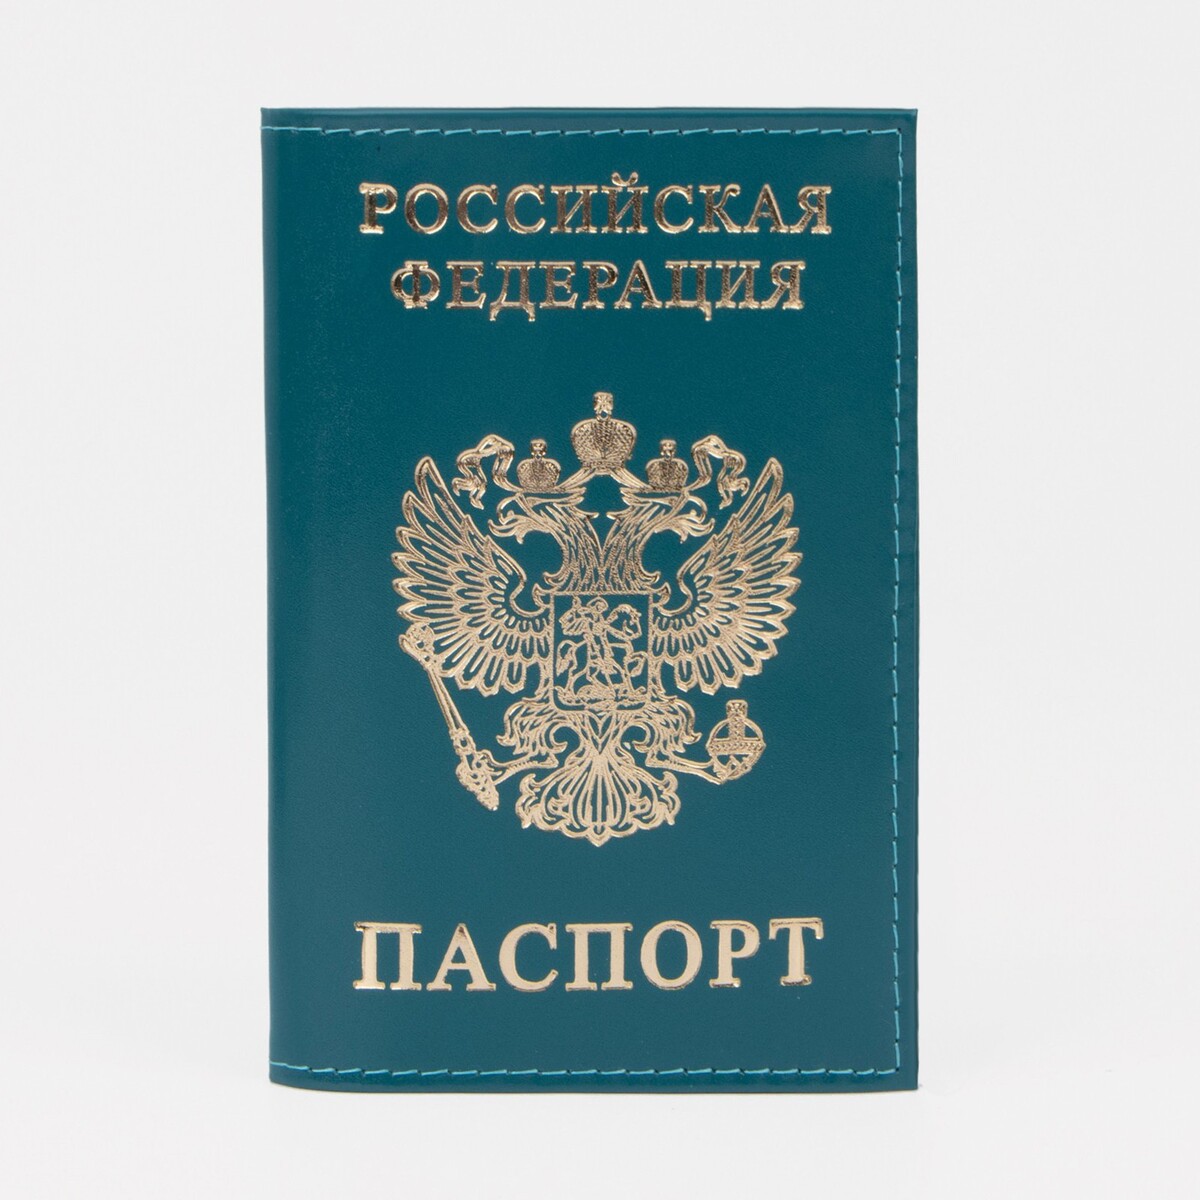 Обложка для паспорта, цвет бирюзовый обложка для паспорта бирюзовый